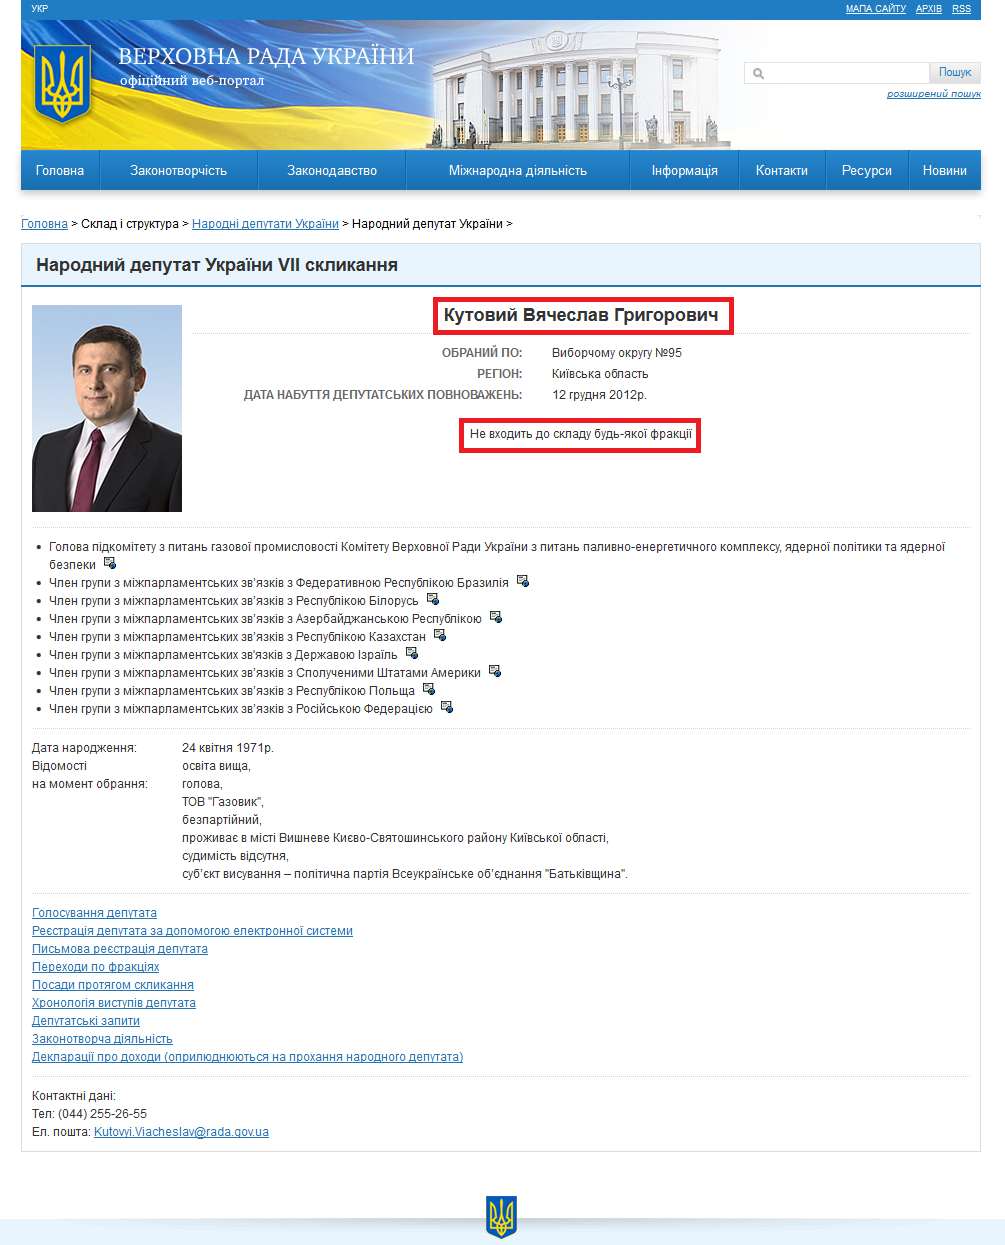 http://gapp.rada.gov.ua/mps/info/page/15772